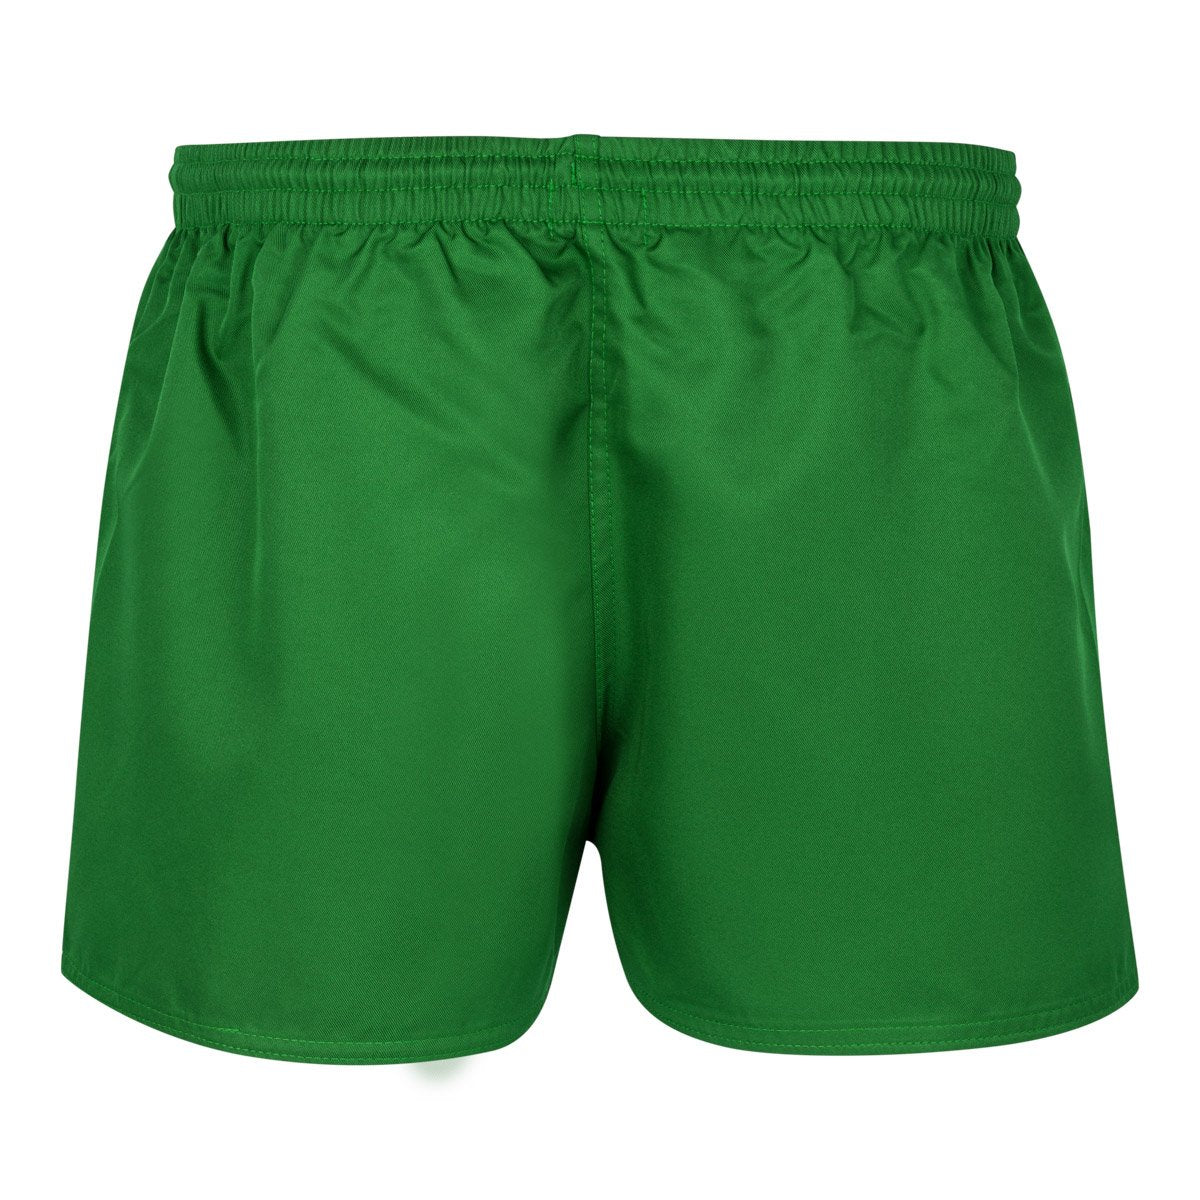 Pantalones cortes Rugby Fredo Verde Niños - Imagen 2